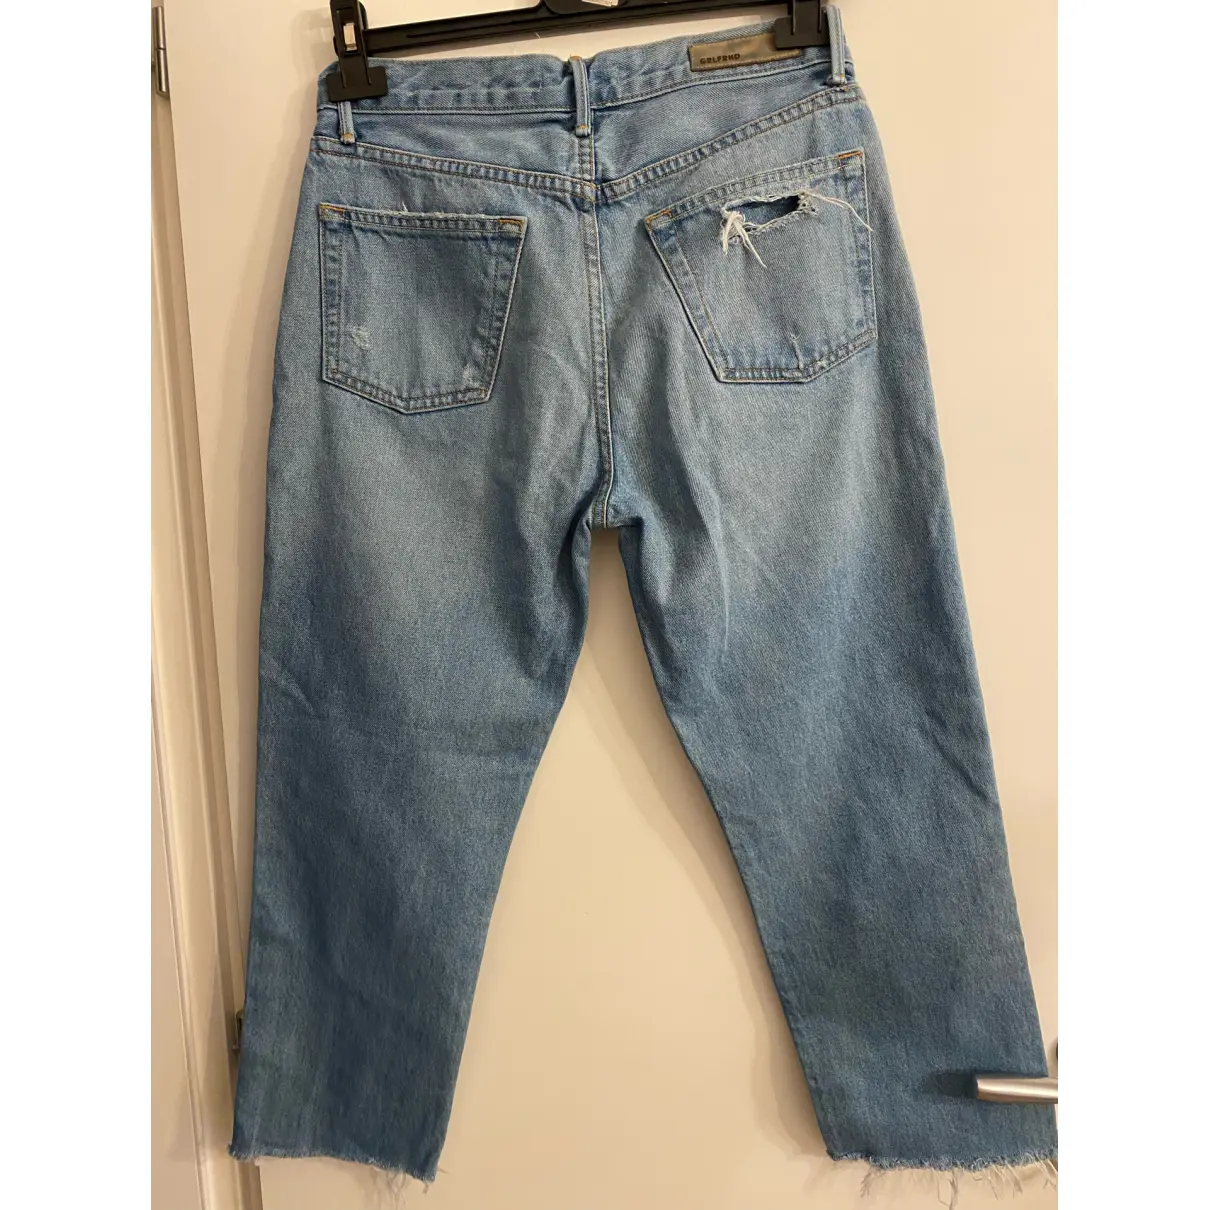 Buy Grlfrnd Boyfriend jeans online